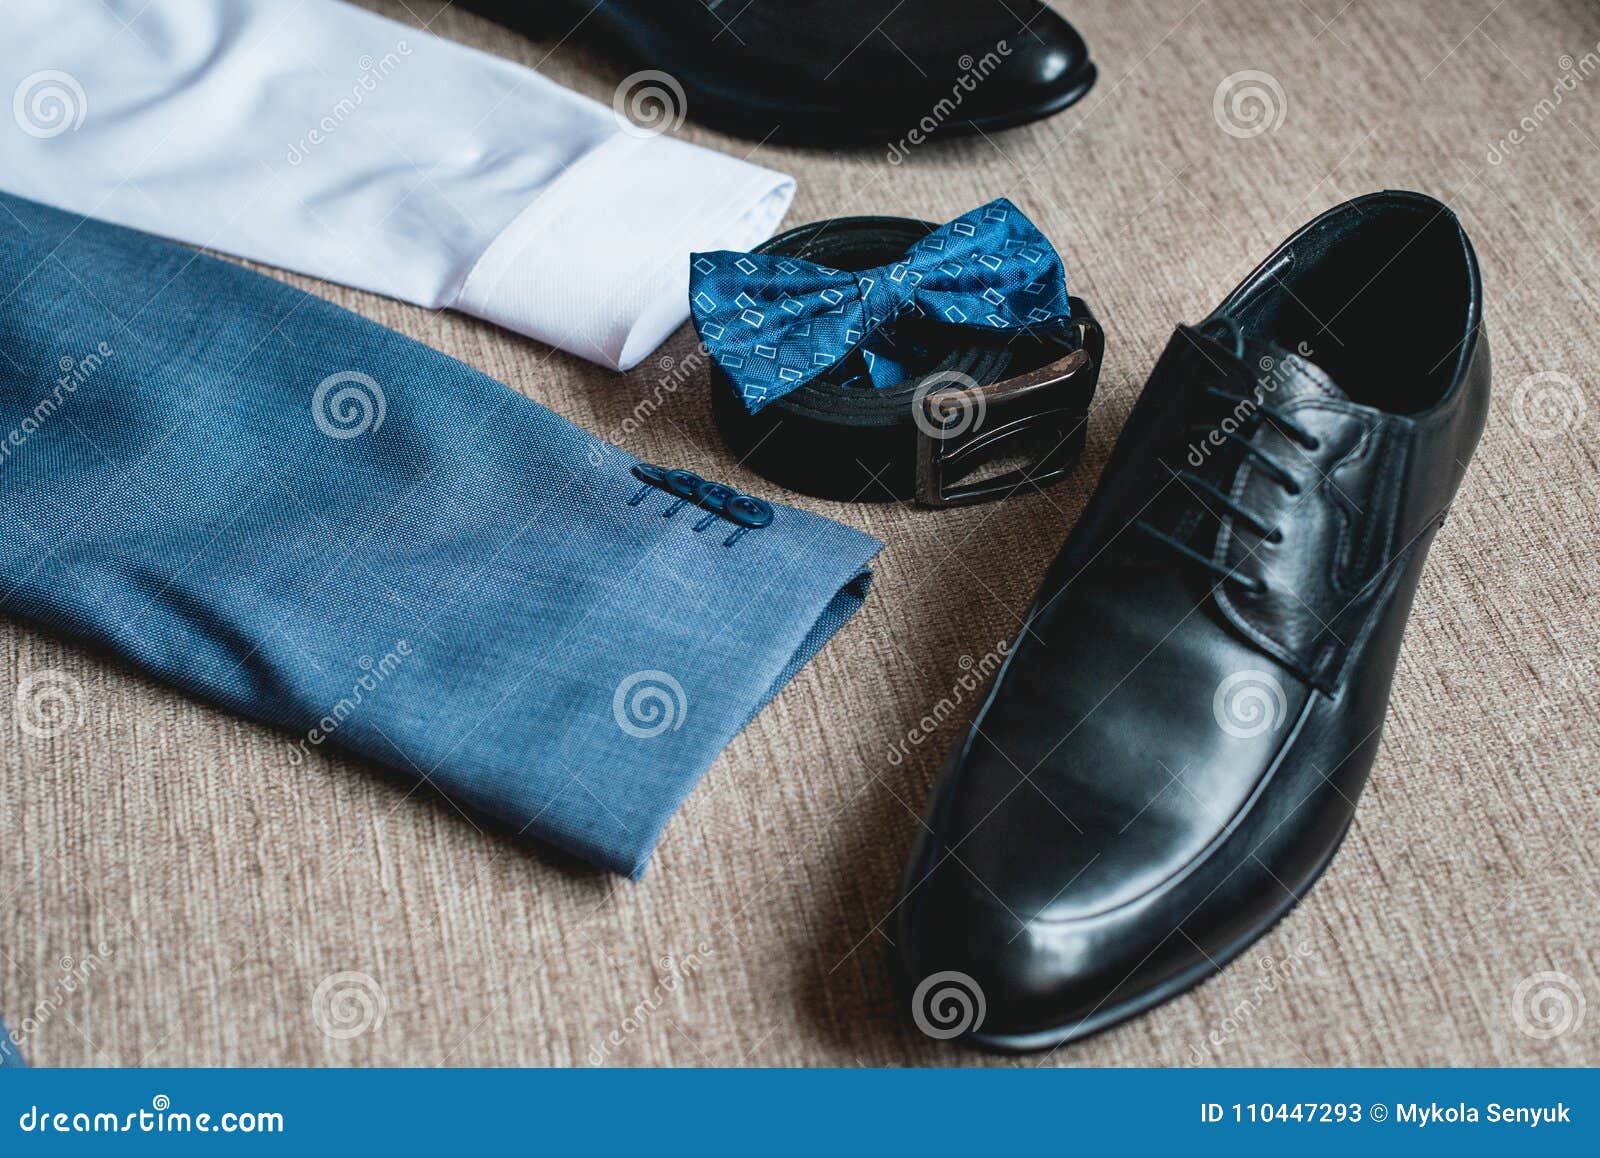 Corbata De Lazo Azul, Zapatos Negros De Cuero Y Correa Novios Que Se Casan Mañana Ciérrese Para Arriba De Los Accesorios D Imagen de archivo - Imagen de mariposa, colonia: 110447293